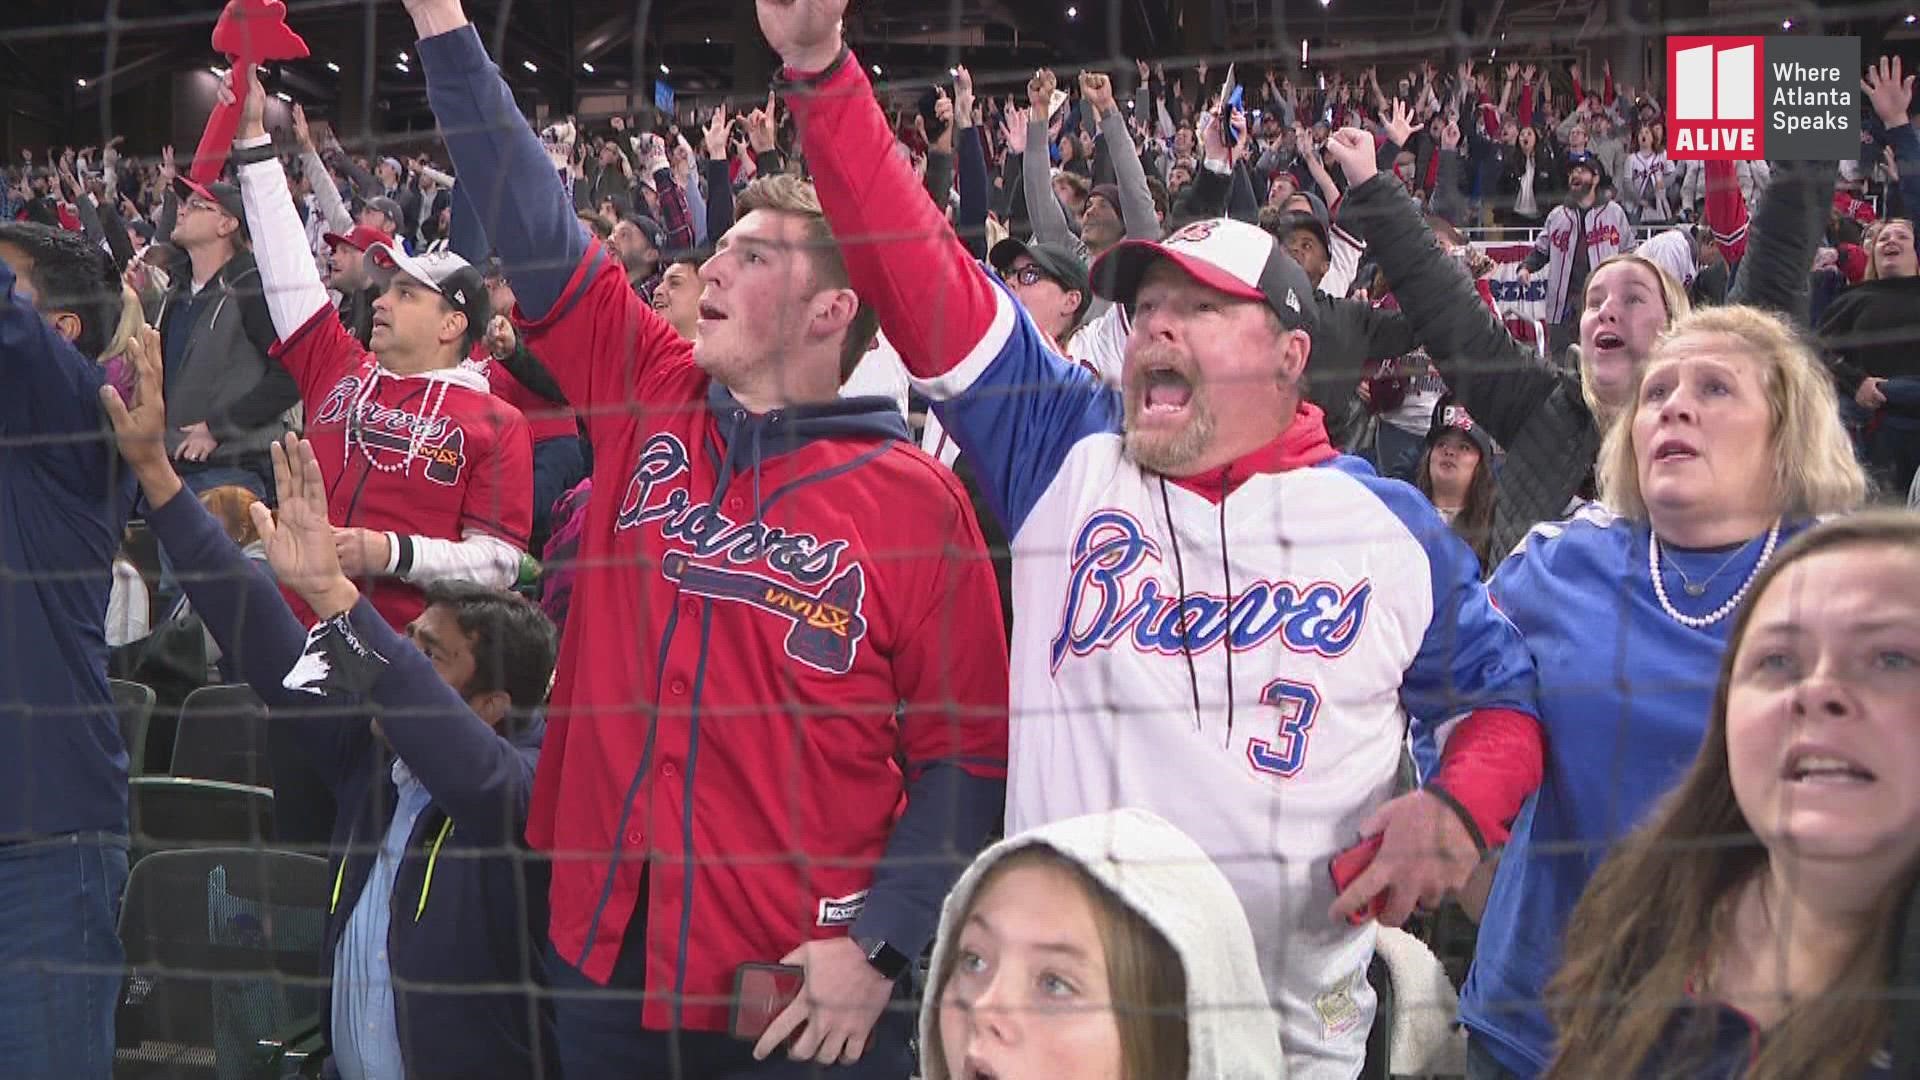 Jorge Soler Braves home run watch fans react inside Truist Park